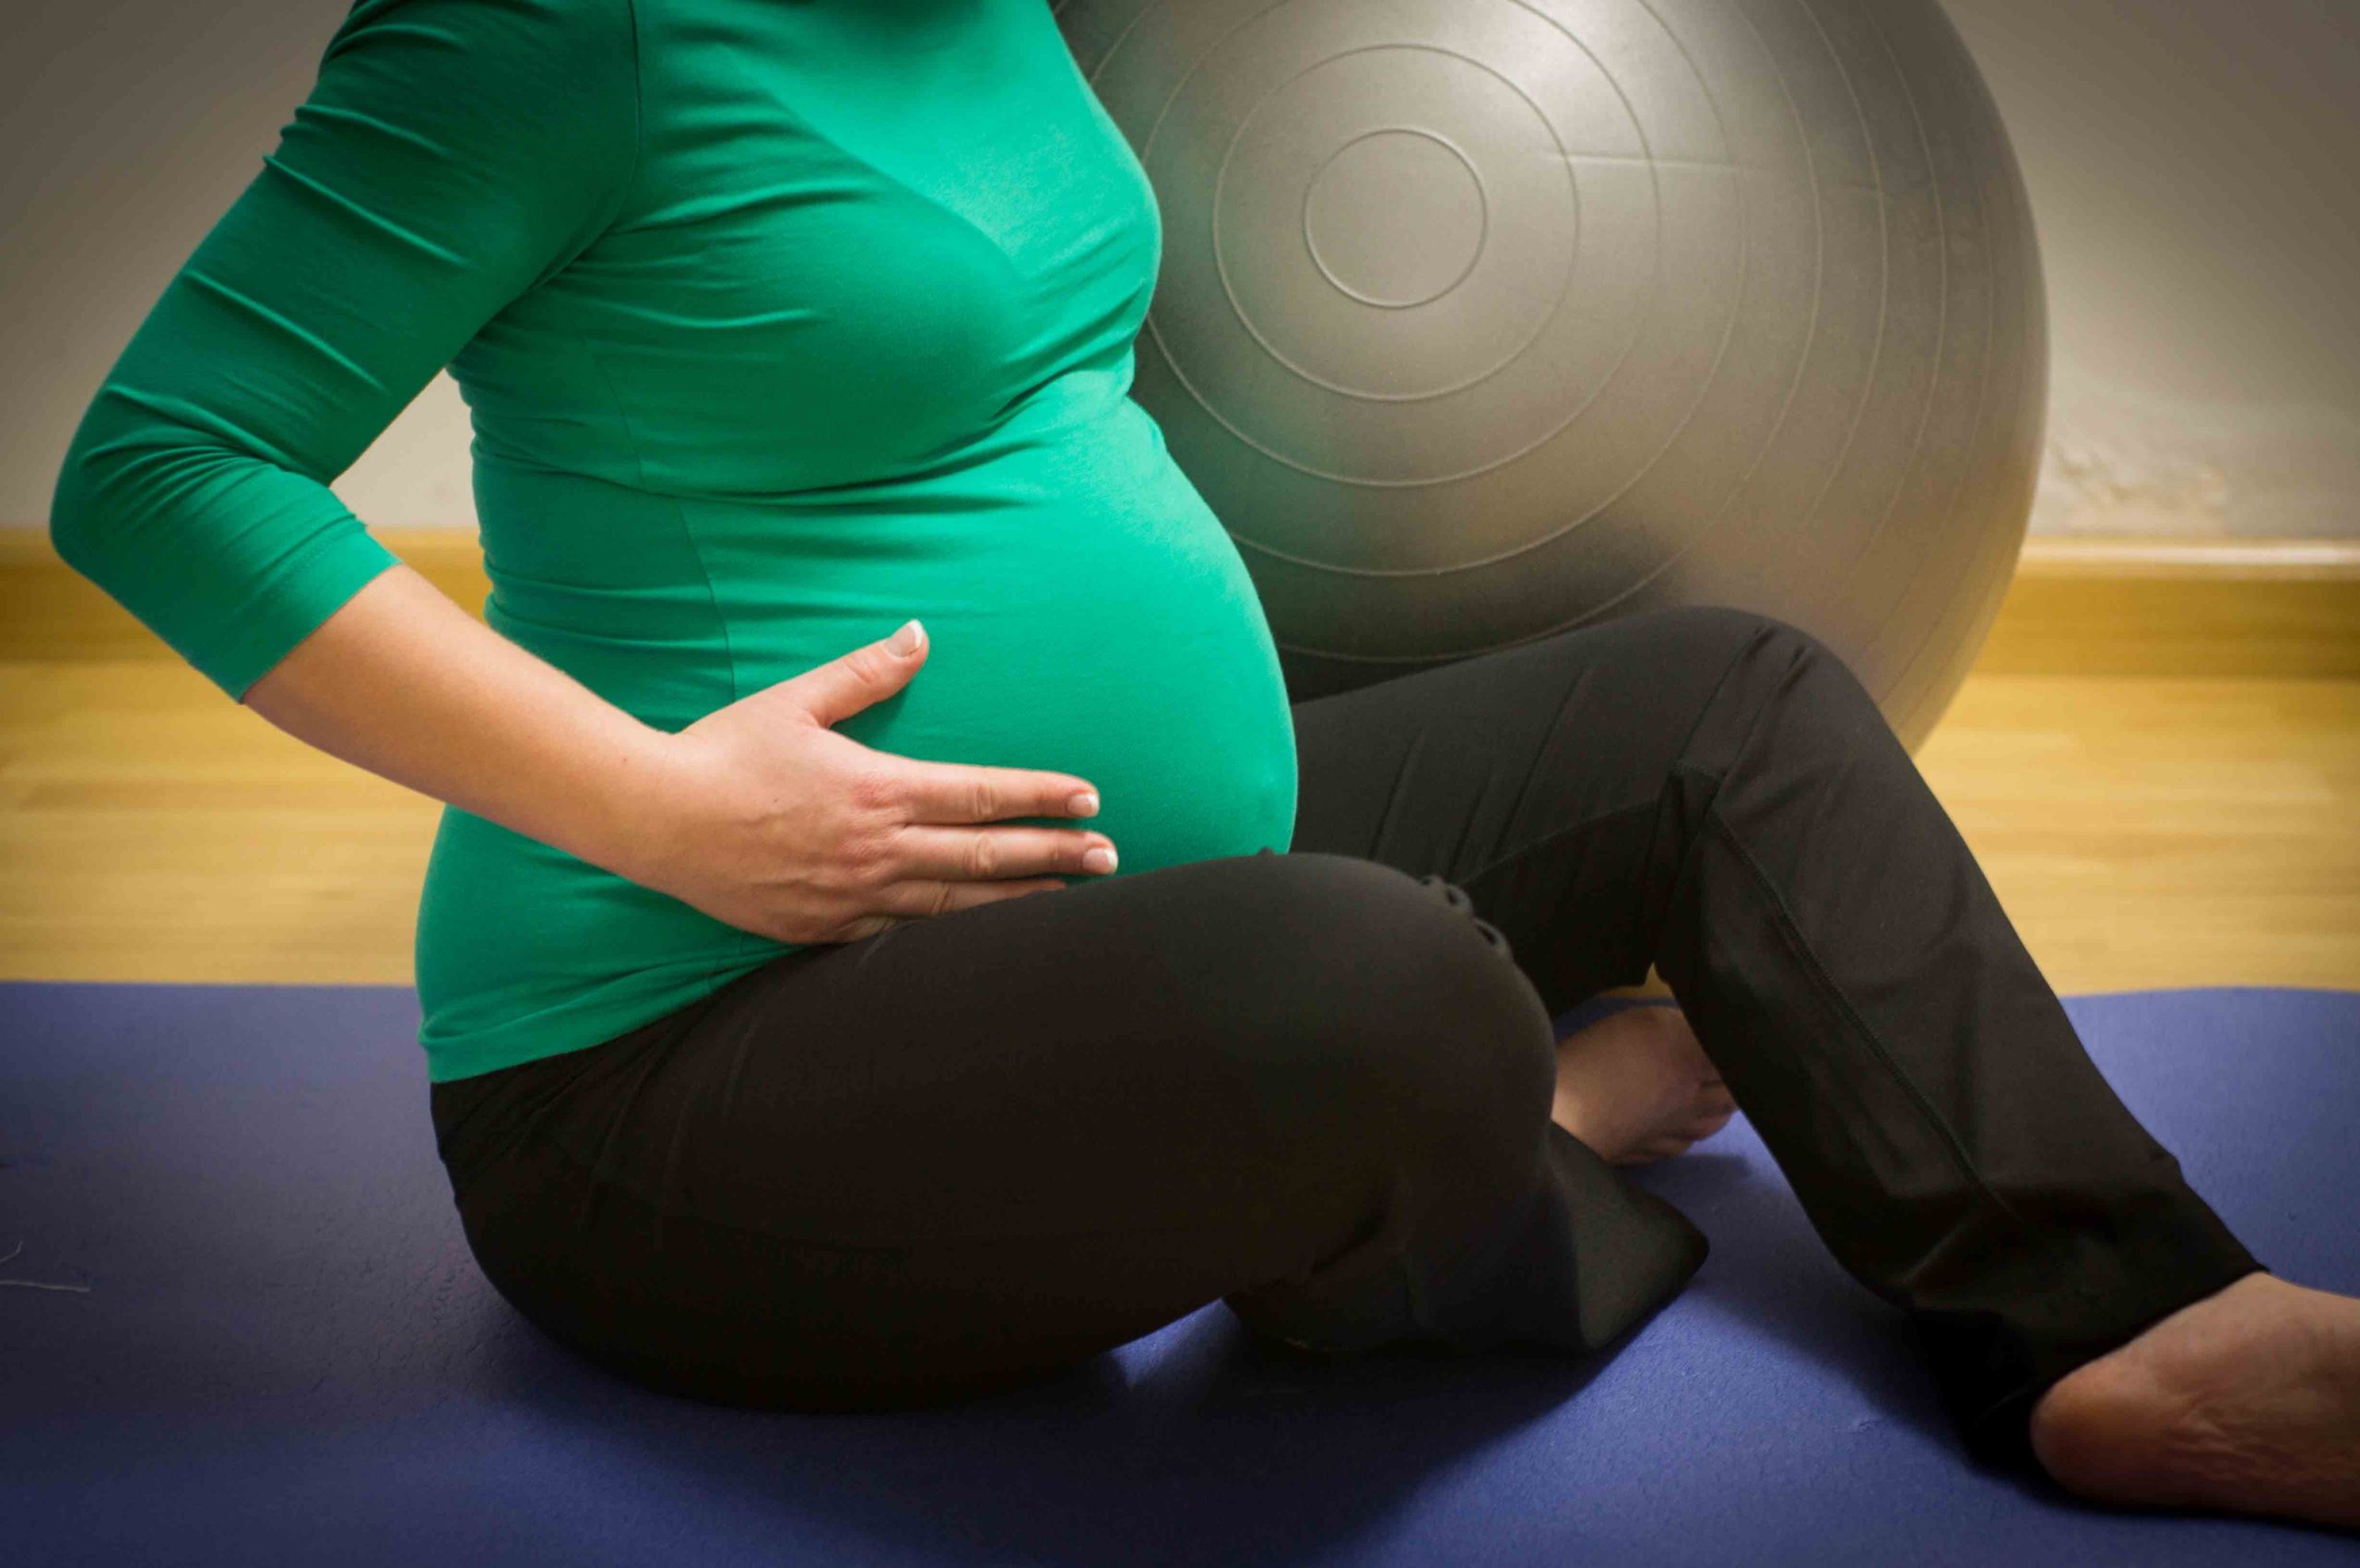 28 неделя беременности тянет. Pregnancy and крытые. Беременные с силовыми нагрузками. Pregnant exercises. Pregnant exercise.